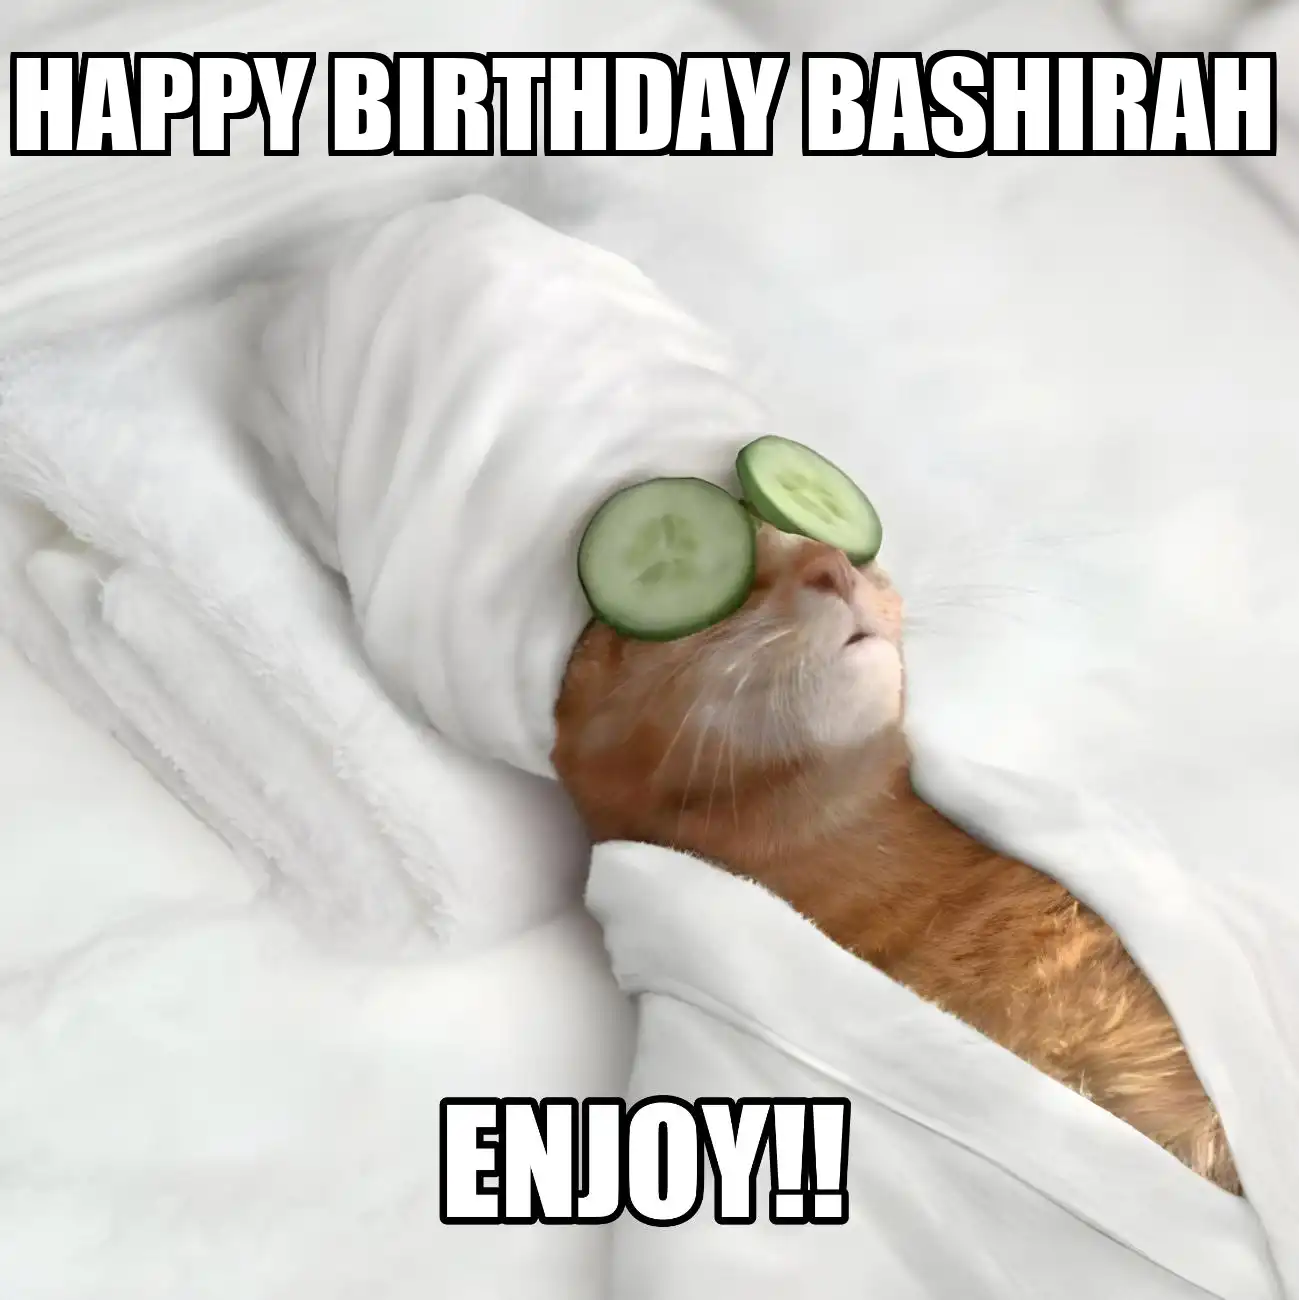 Happy Birthday Bashirah Enjoy Cat Meme